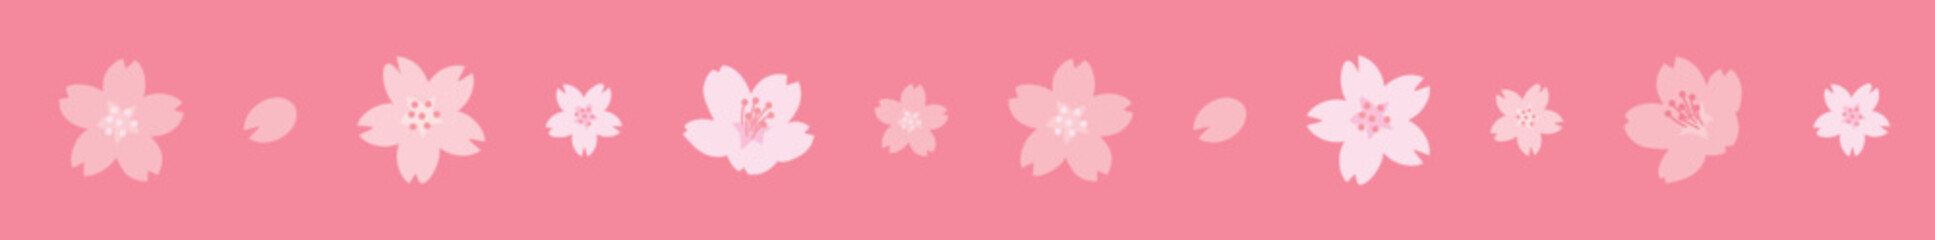 舞い散る桜の花びらのラインイラスト